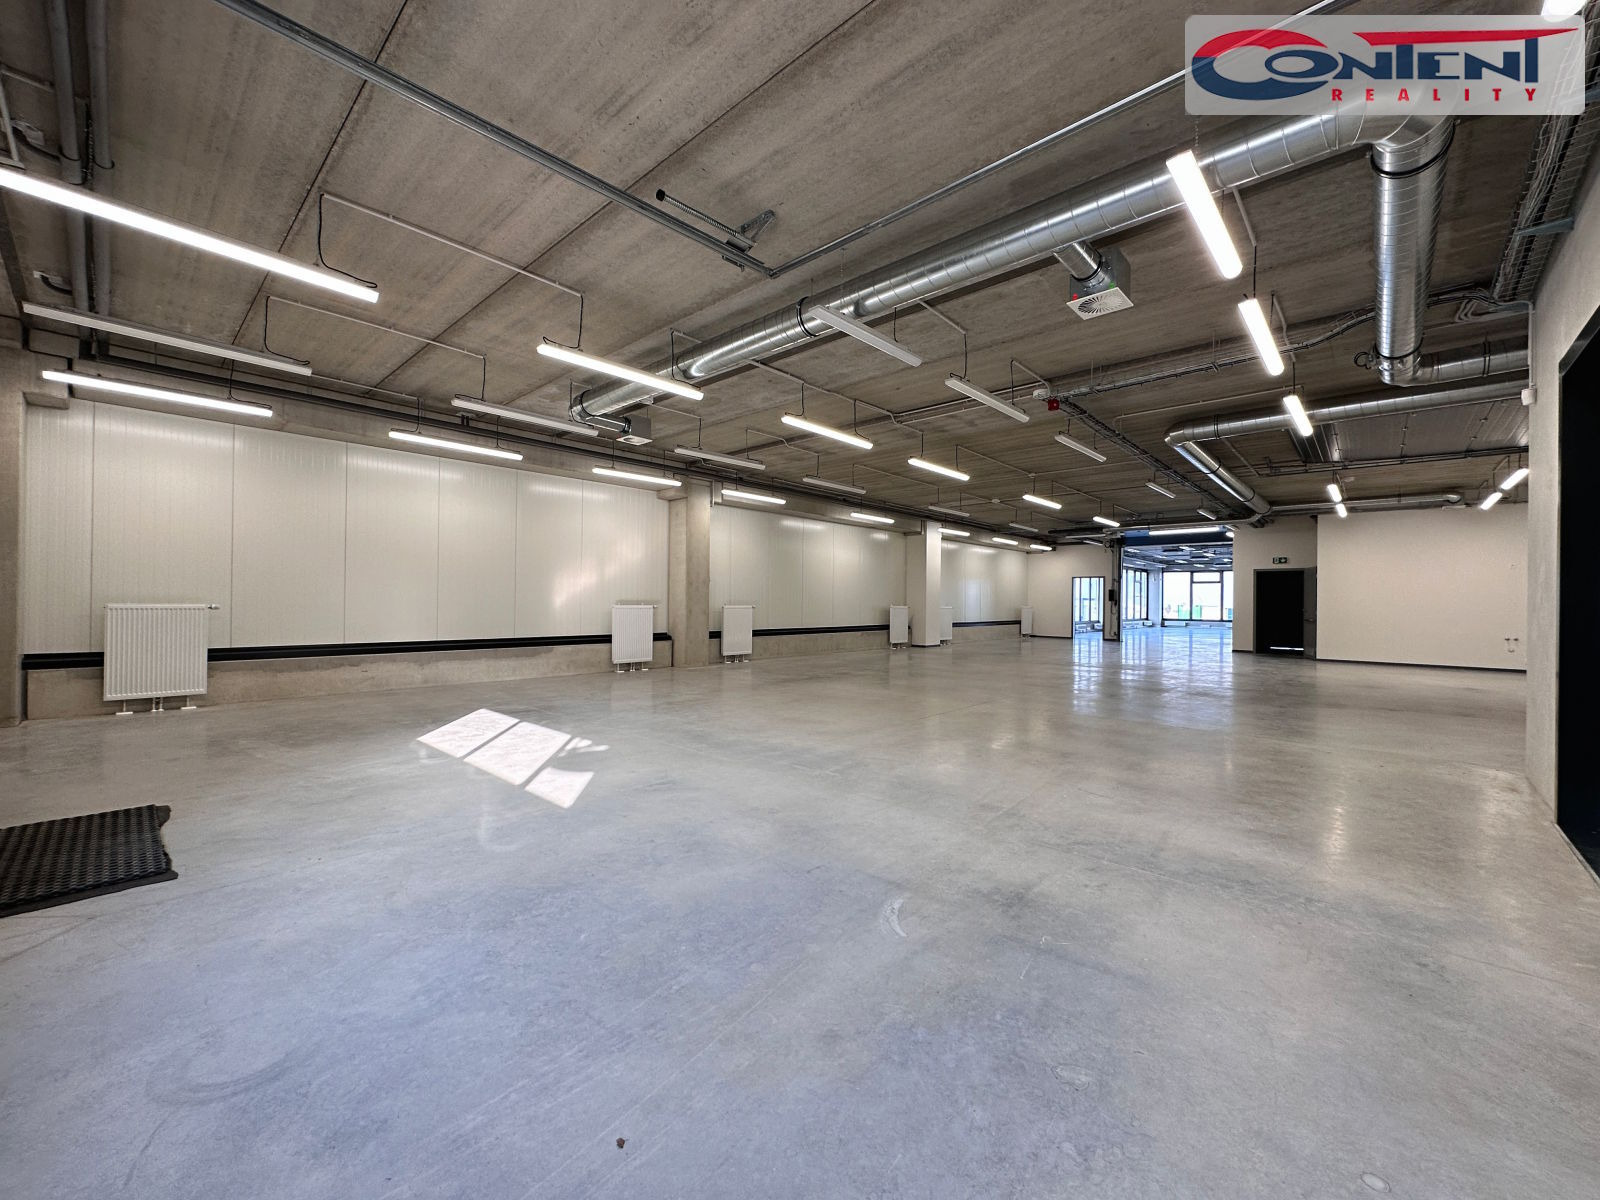 Pronájem skladu, výroby, stavba na klíč 1.100 m², Praha 9 Horní Počernice, D10